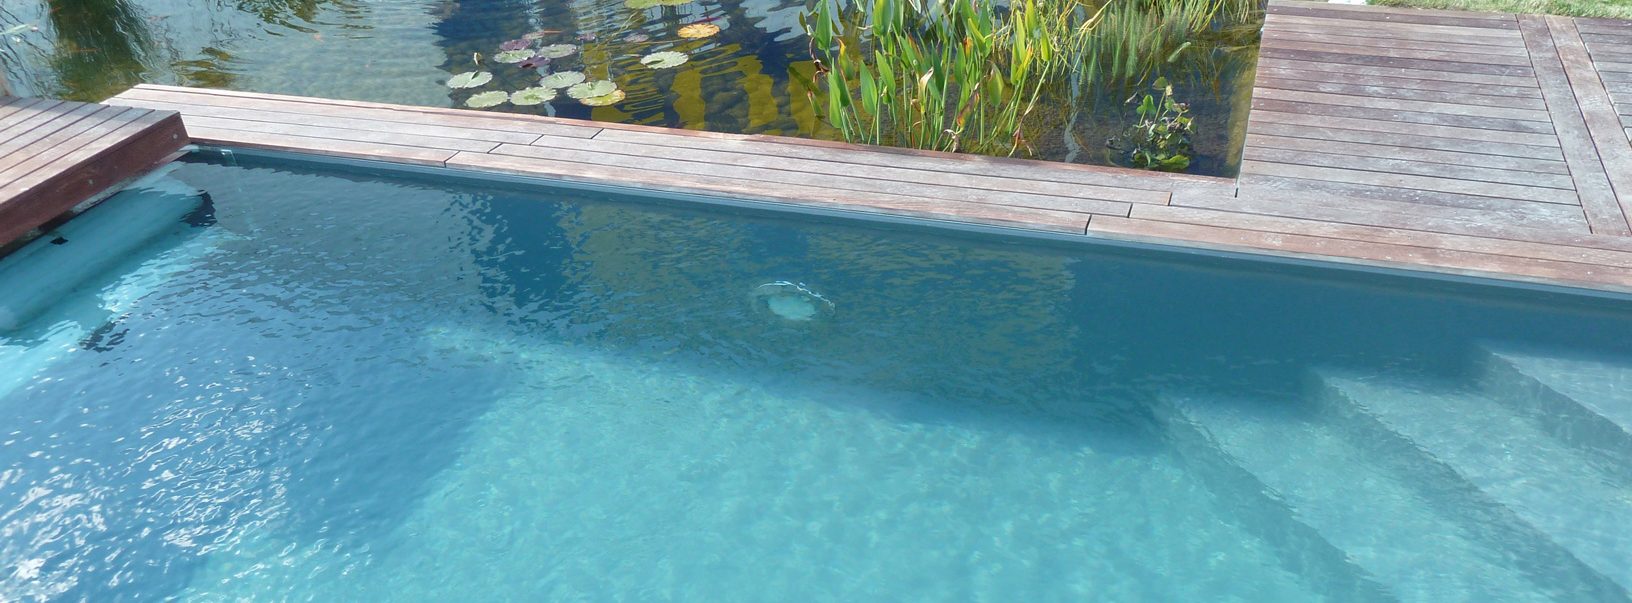 Exemple d'escalier de piscine en angle droit